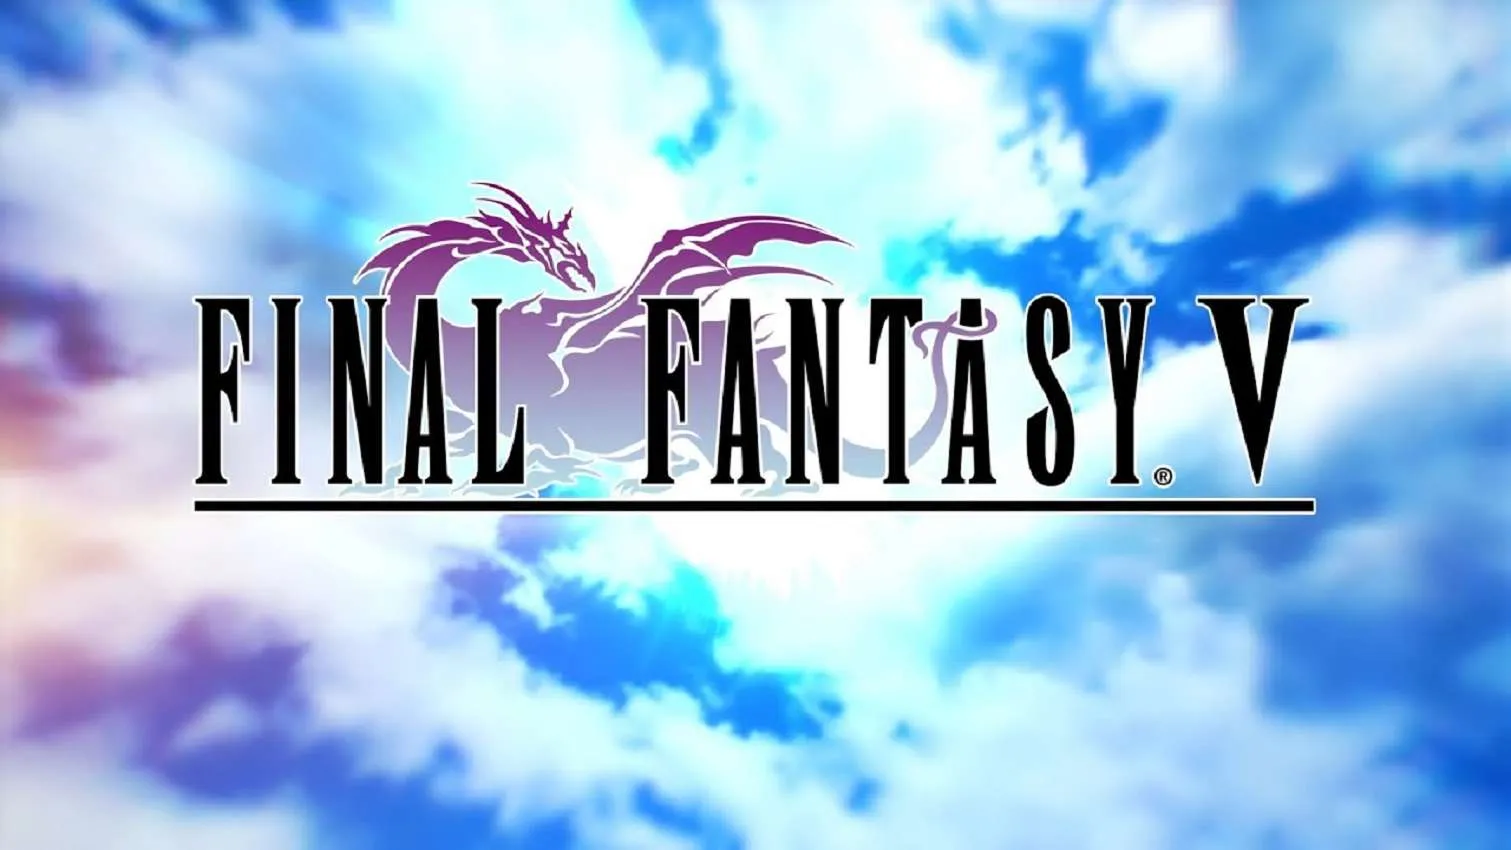 Finfal Fantasy V Pixel Remaster